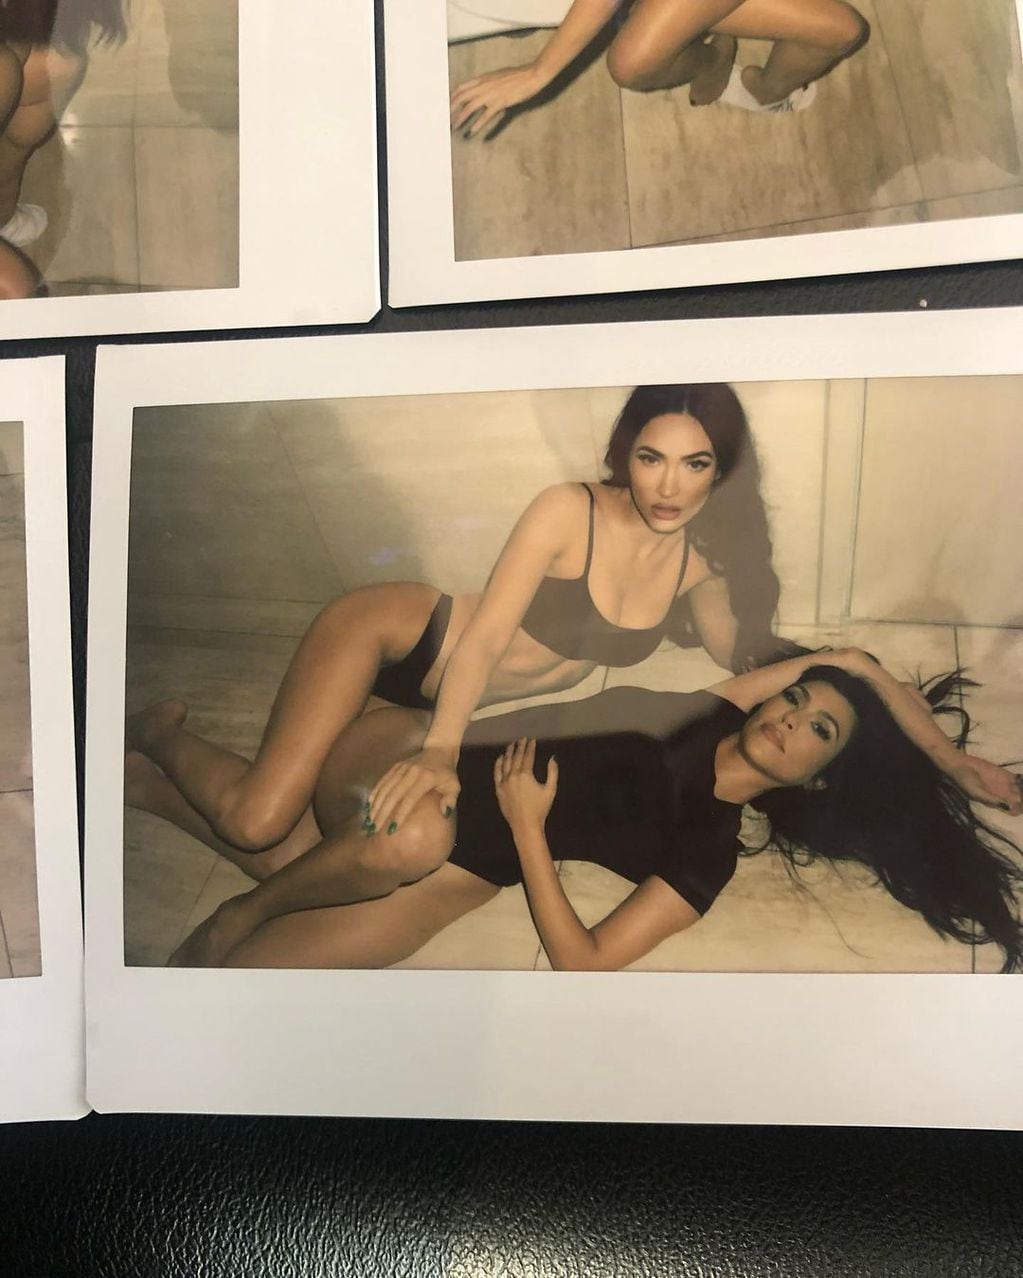 La osada producción de fotos de Megan Fox y Kourtney Kardashian.